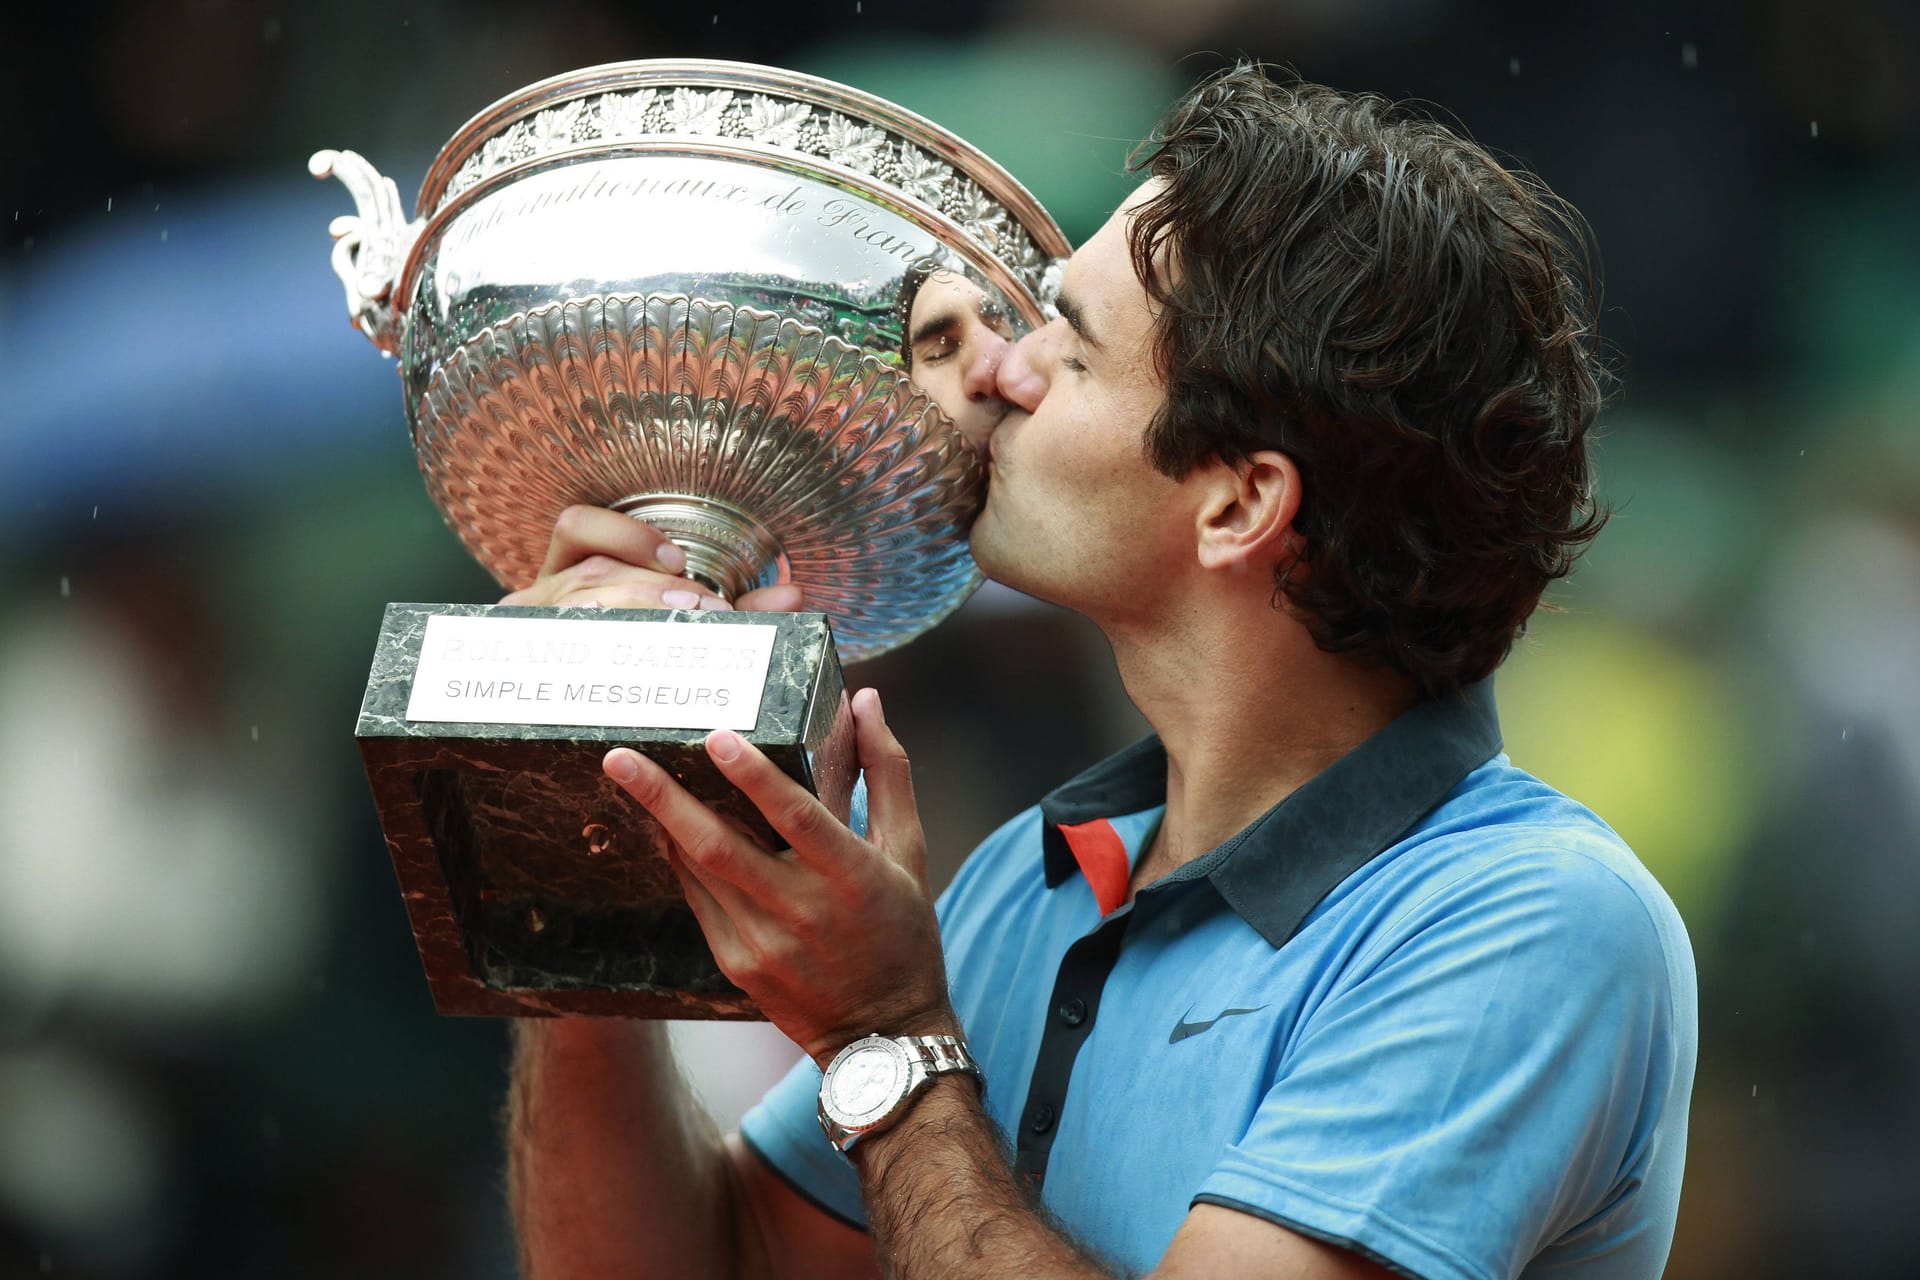 Roland Garros 2009: Nach drei Finalniederlagen in Folge (alle gegen Nadal), schafft es Federer bei den French Open 2009 wieder ins Endspiel. Dort fegt er Nadal-Bezwinger Robin Söderling glatt in drei Sätzen vom Platz und darf erstmals den "Coupe des Mousquetaires" küssen – der letzte noch fehlende Grand-Slam-Titel in seiner Sammlung. Mit seinem insgesamt 14. Grand-Slam-Titel stellt er zudem den Rekord von Pete Sampras ein.